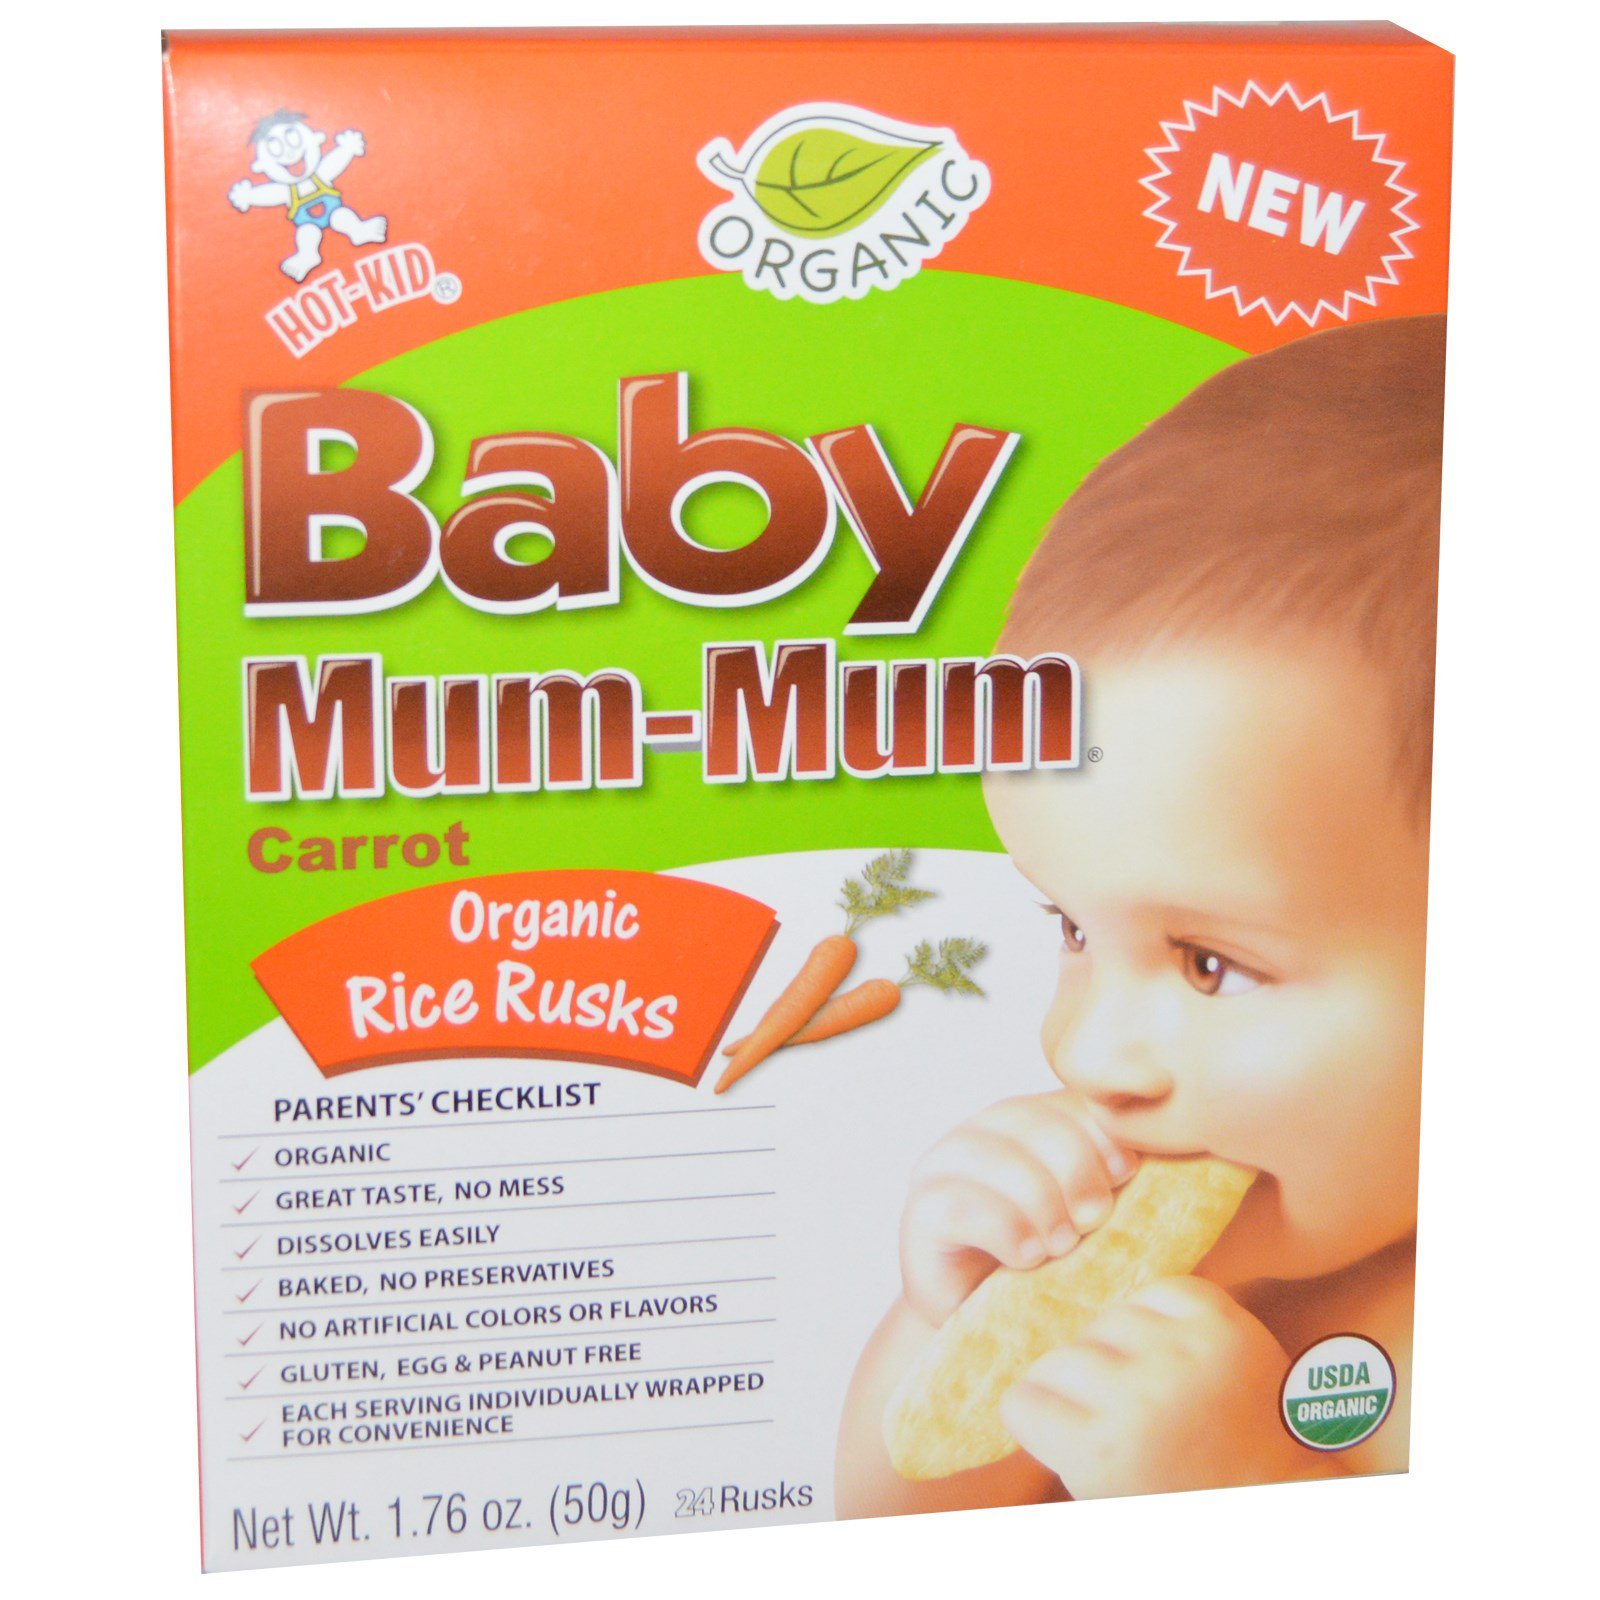 Hot Kid, Baby Mum-Mum, Organic Rice Rusks, Carrot, 24 Rusks, 1.76 oz ...